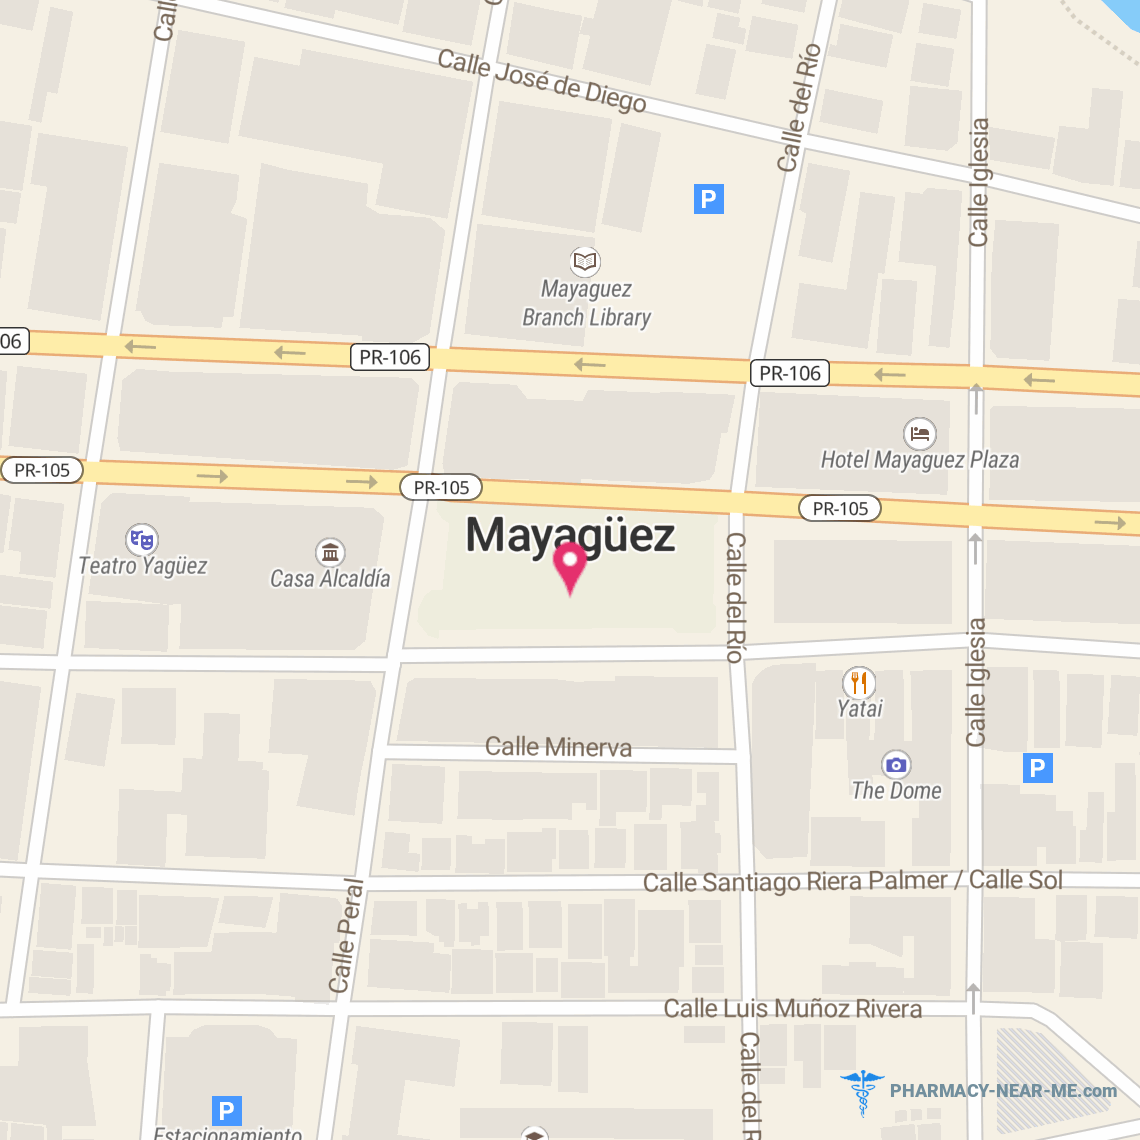 WALGREENS #00374 - Pharmacy Hours, Phone, Reviews & Information: Mayagüez, PR